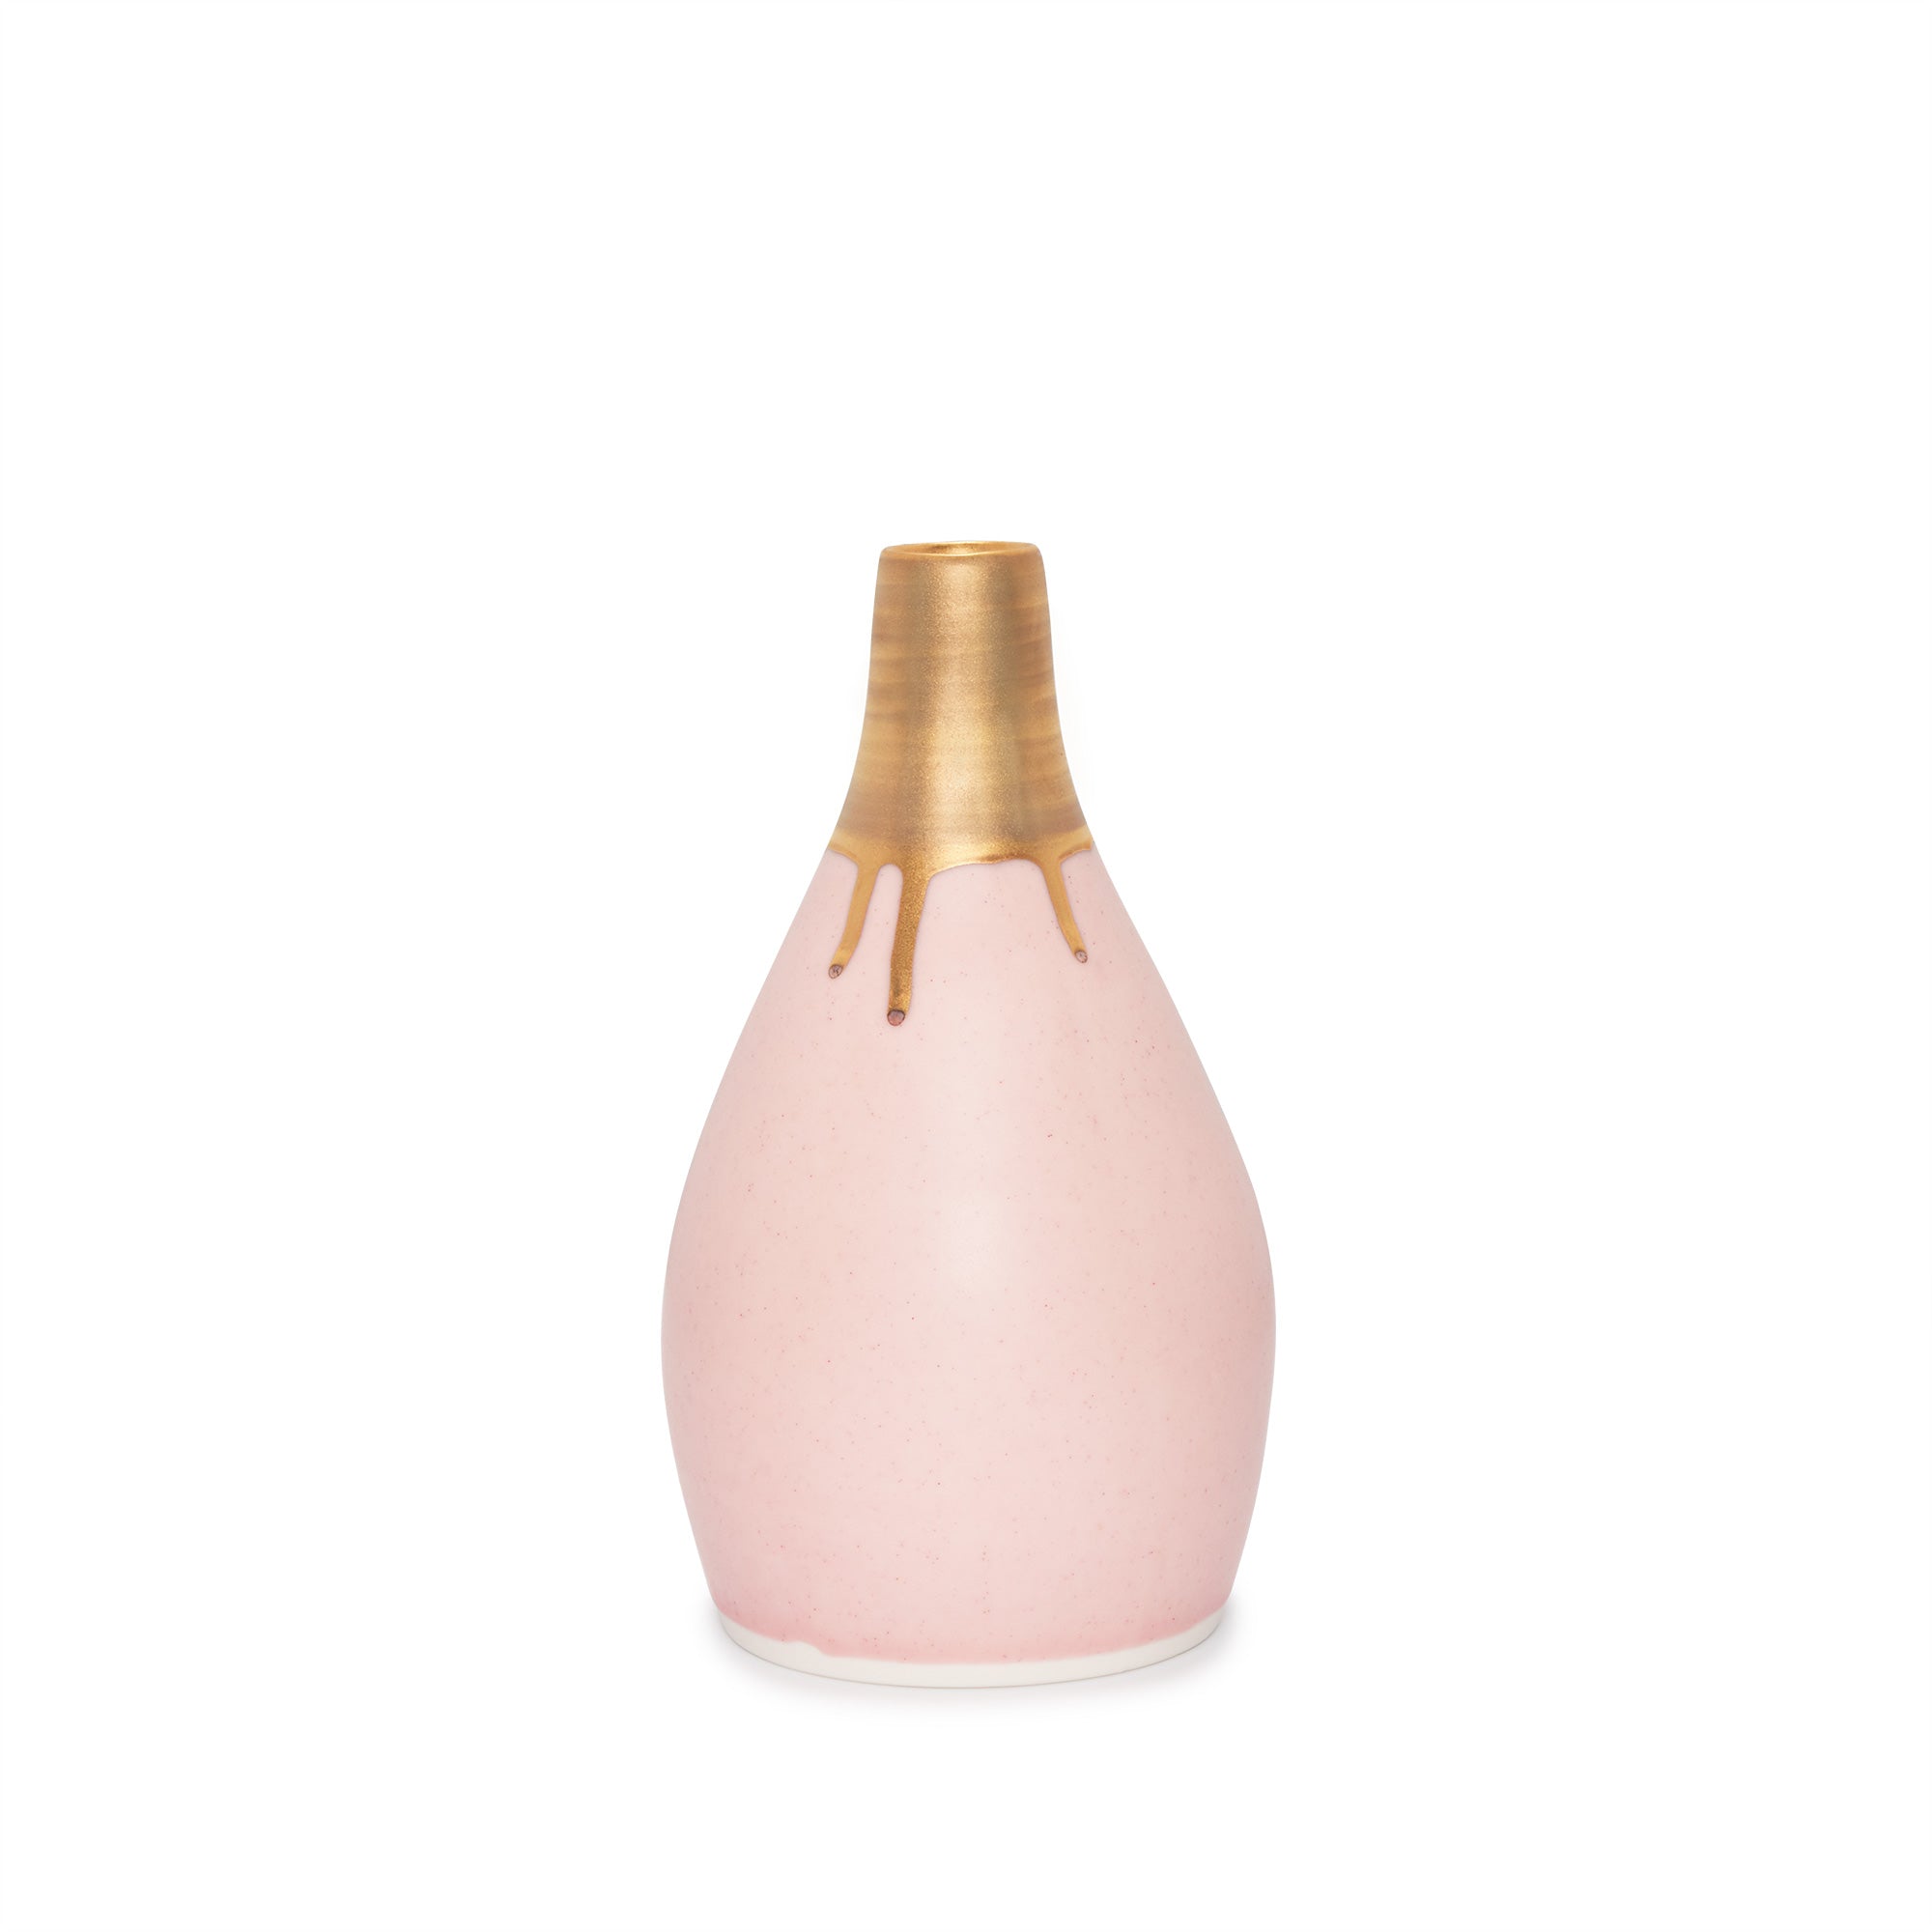 Gramercy Bottle Vase - Ltd. Edition Matte Pink & Gold